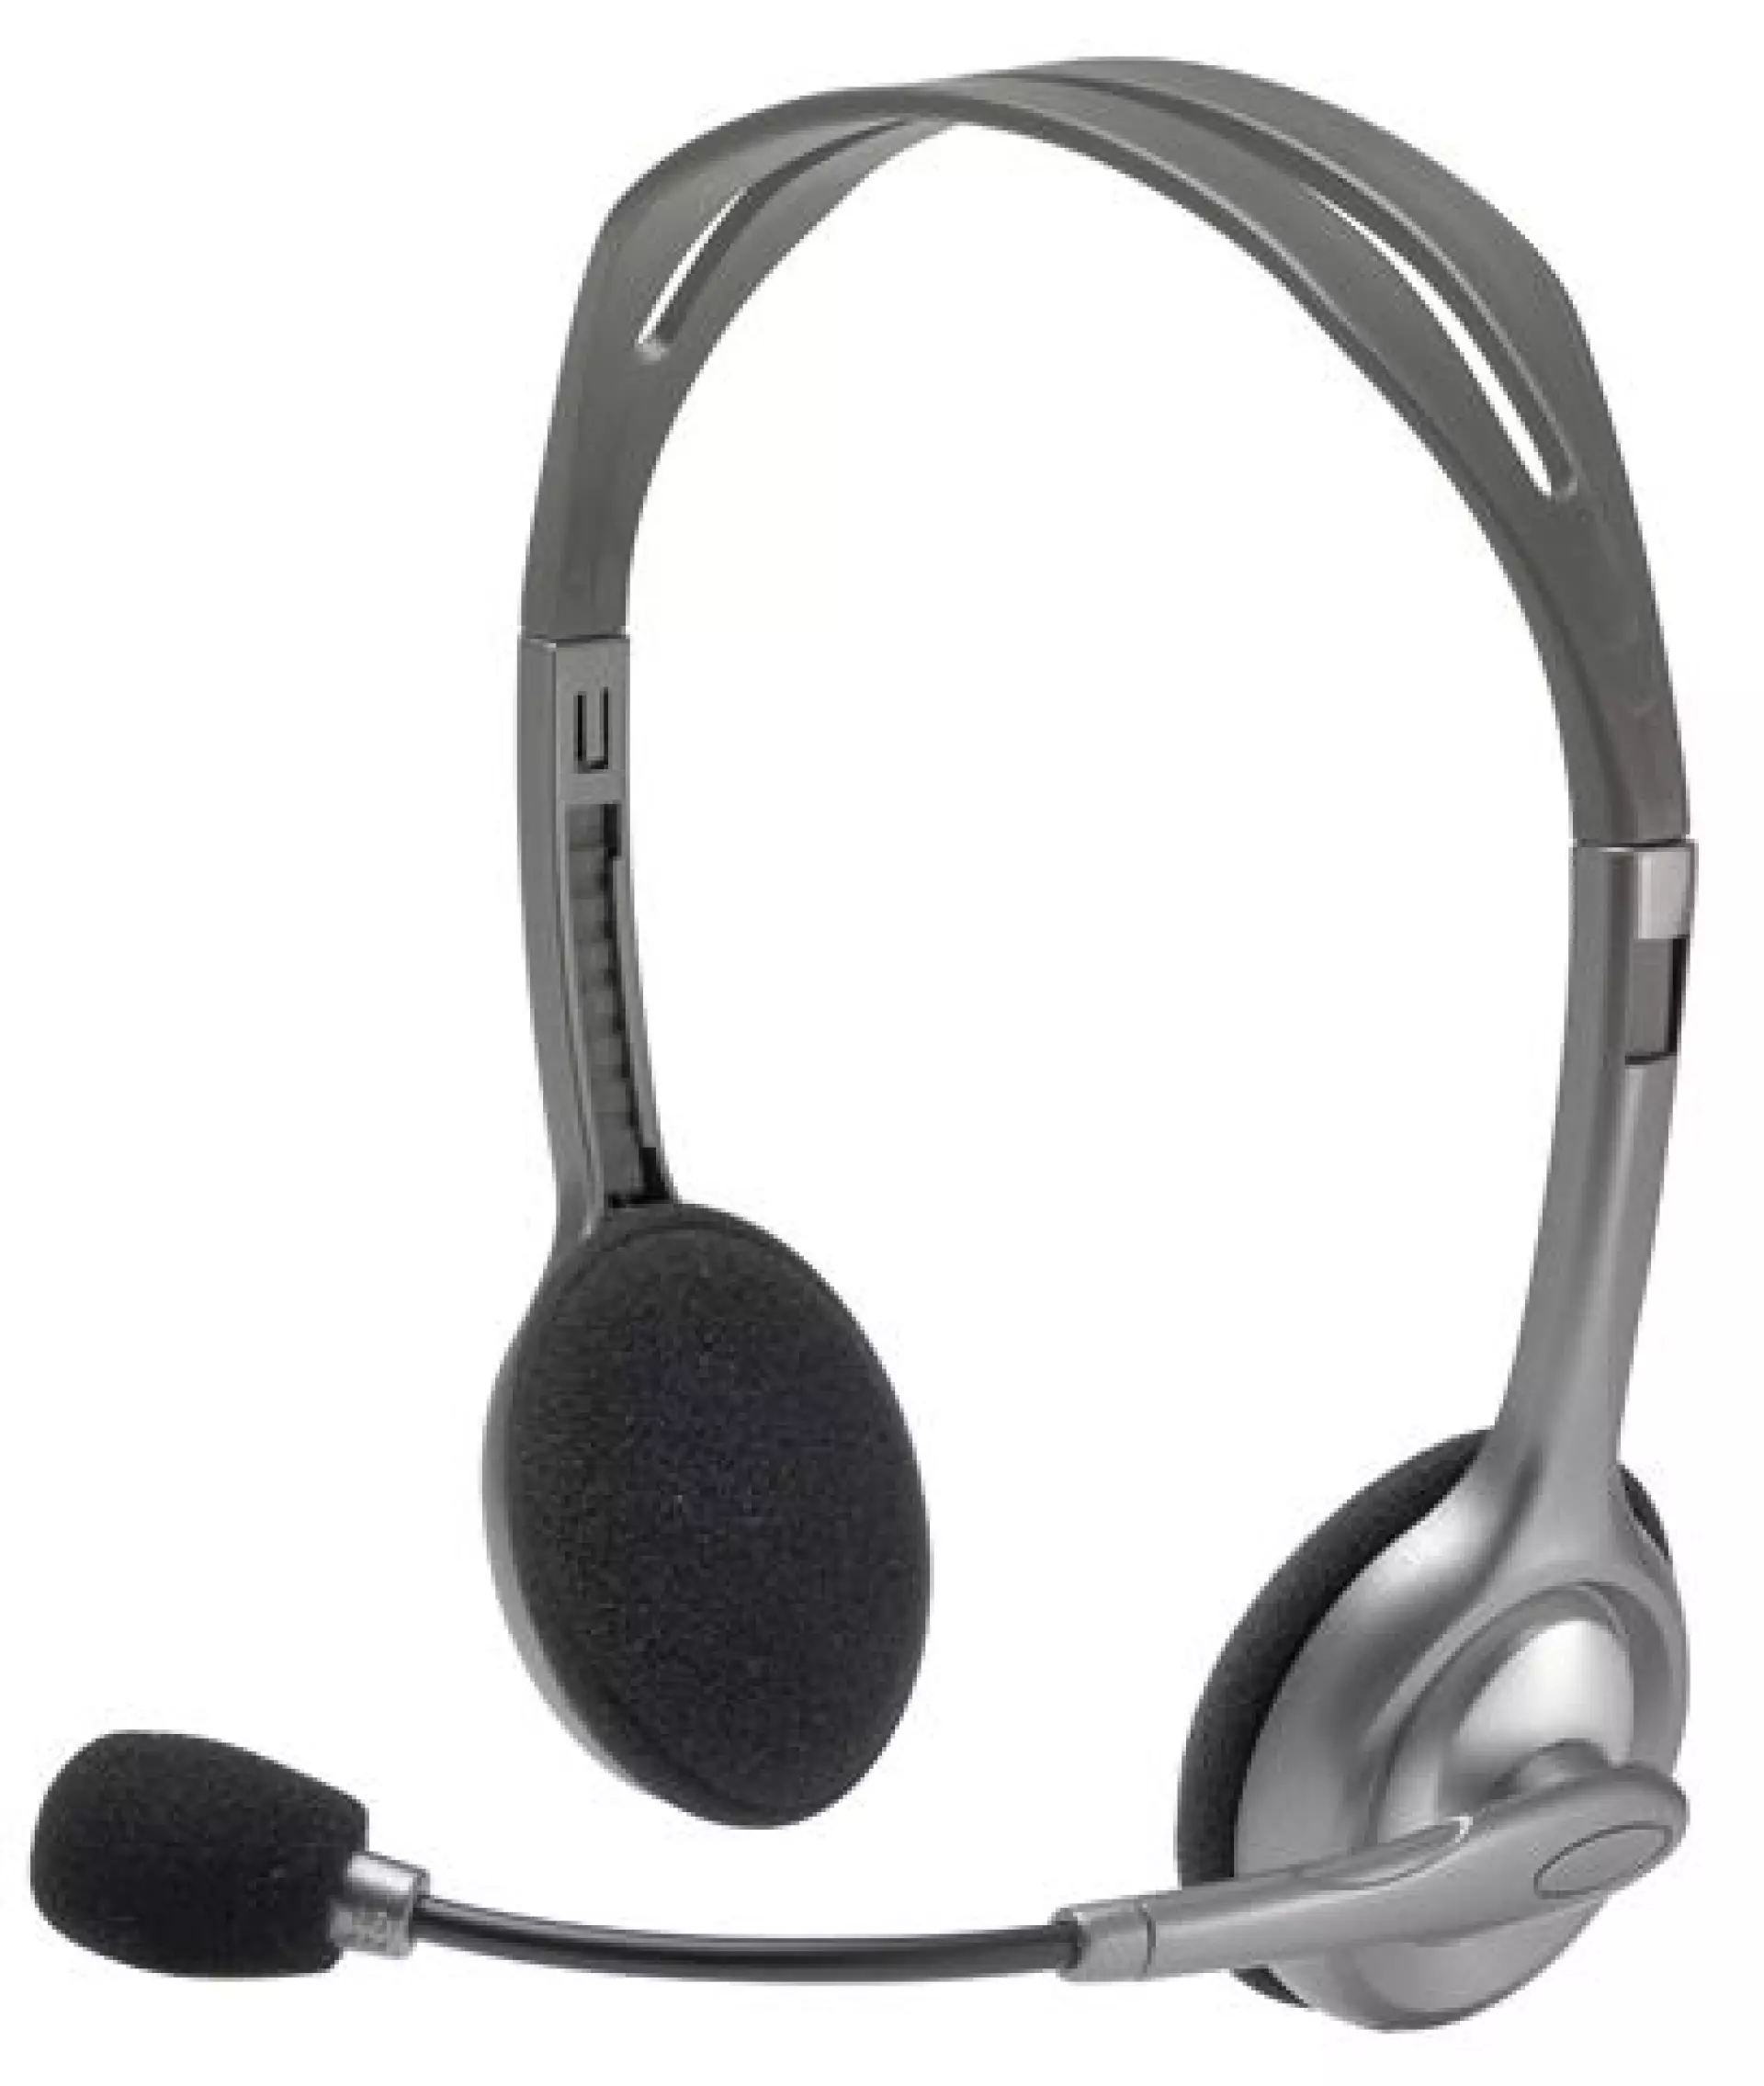 Slušalice Logitech H110